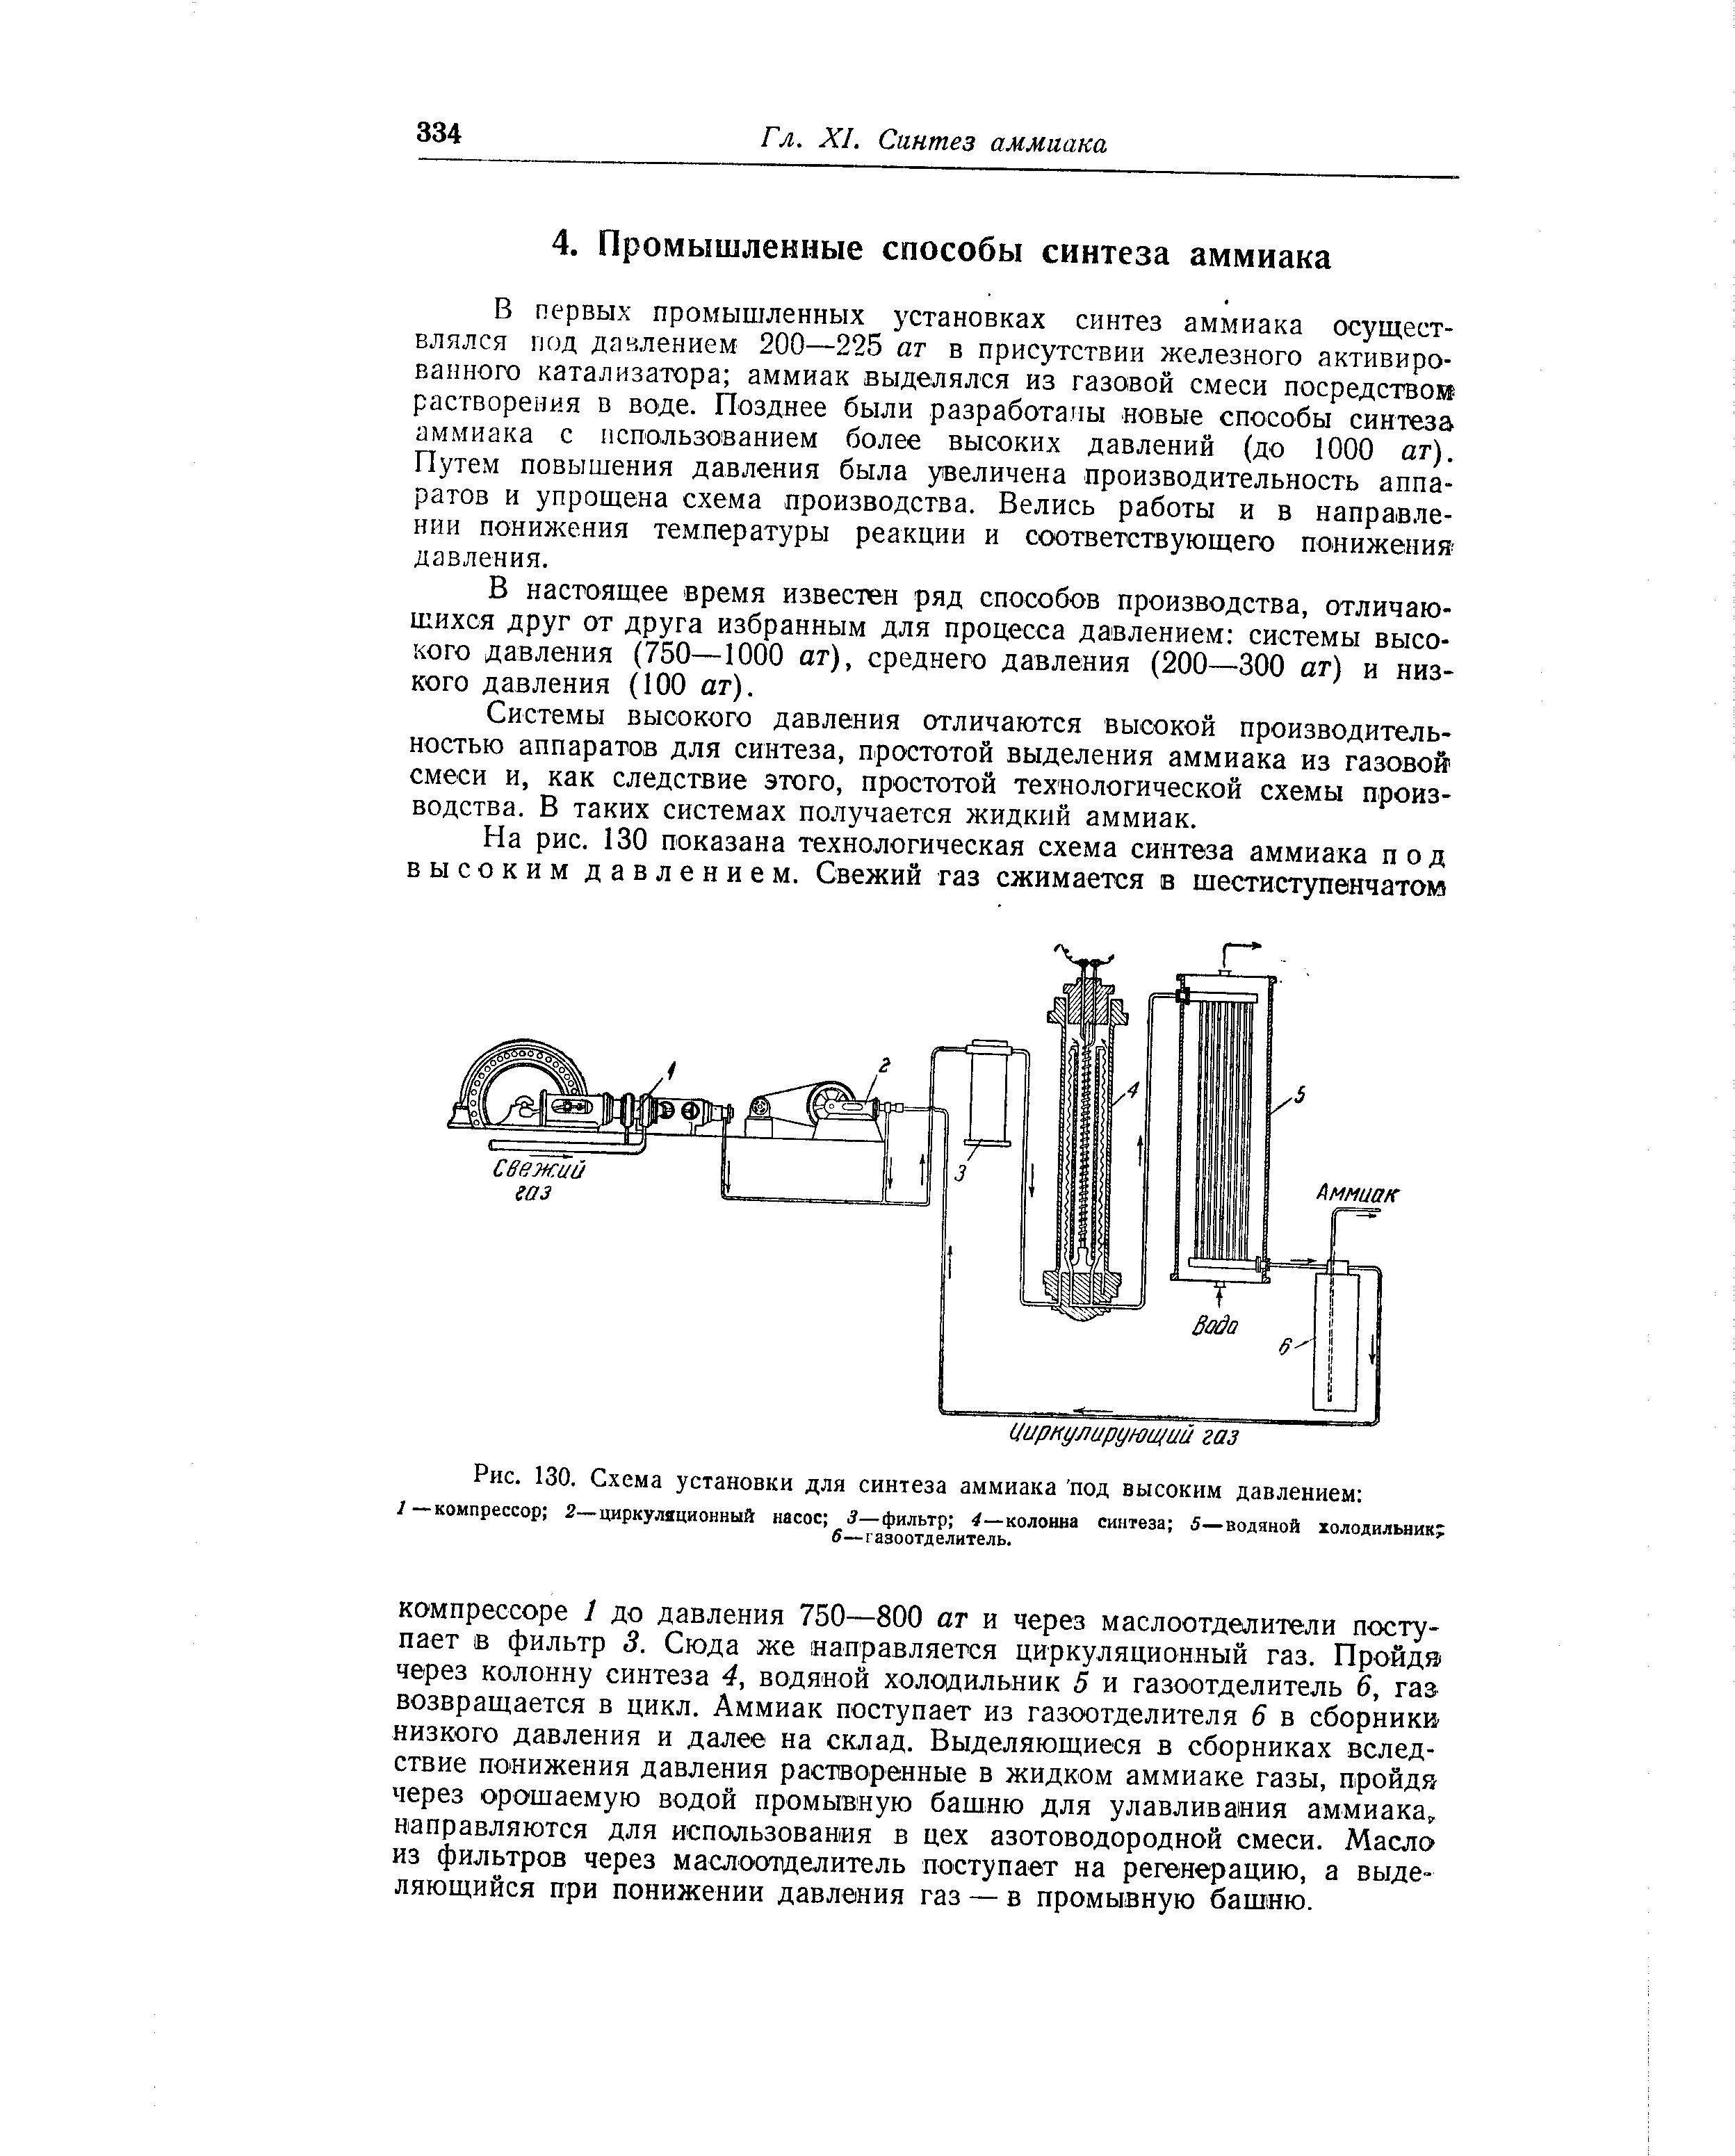 Схема синтеза аммиака при давлении 30 МПА